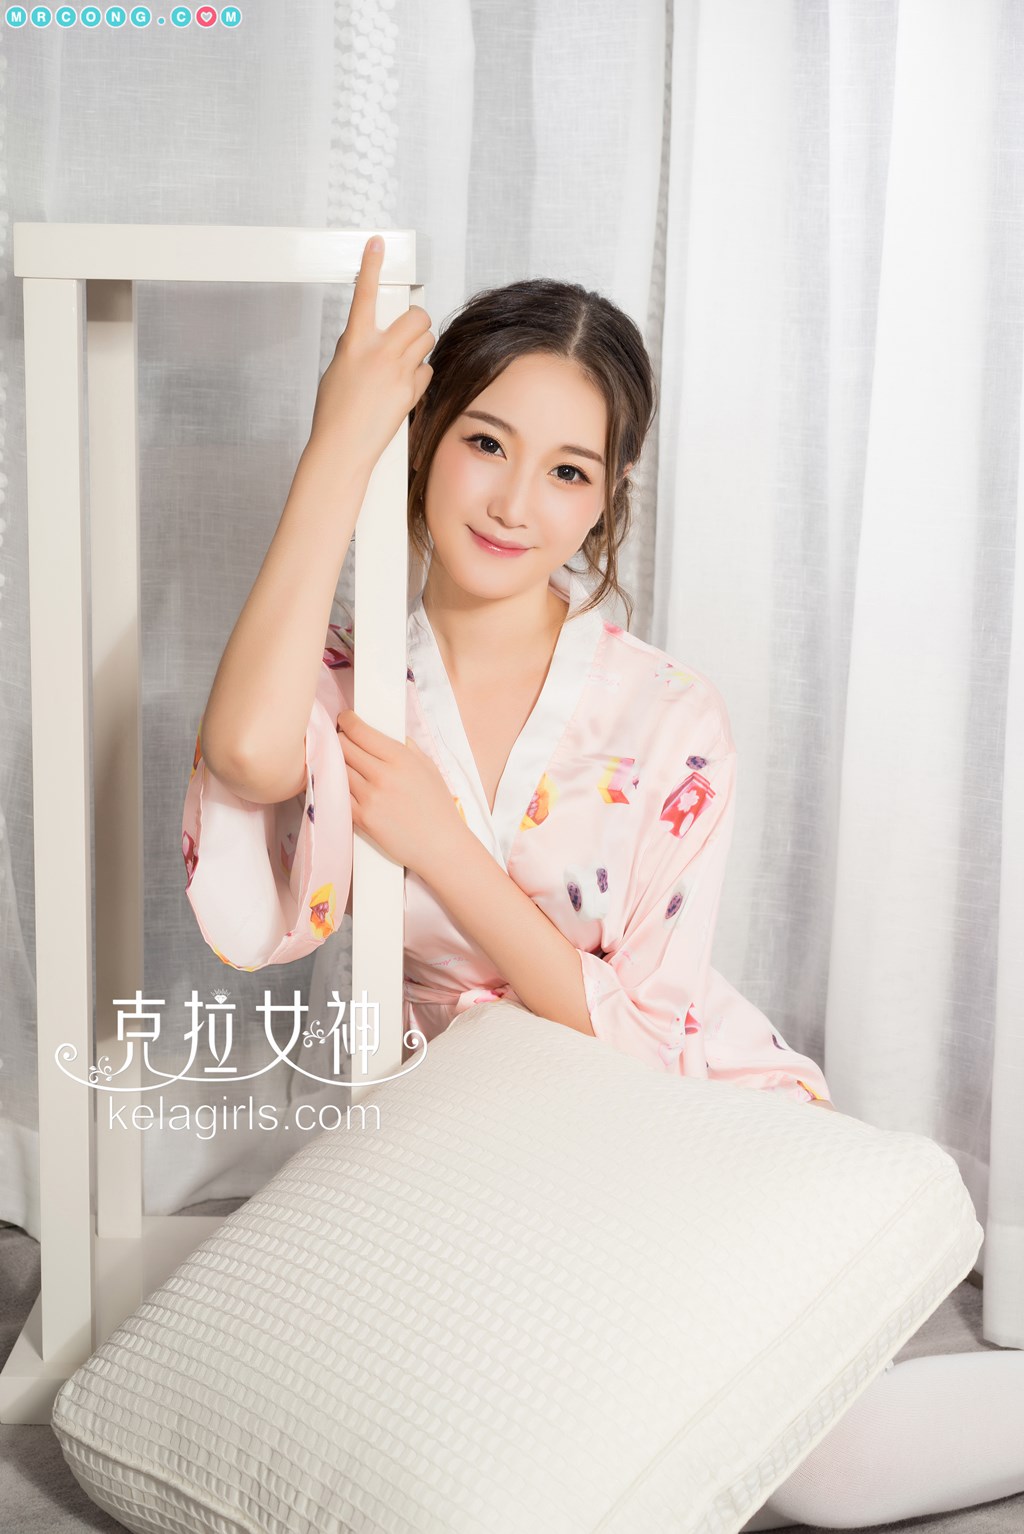 KelaGirls 2017-09-24: Model Yang Nuan (杨 暖) (26 photos)